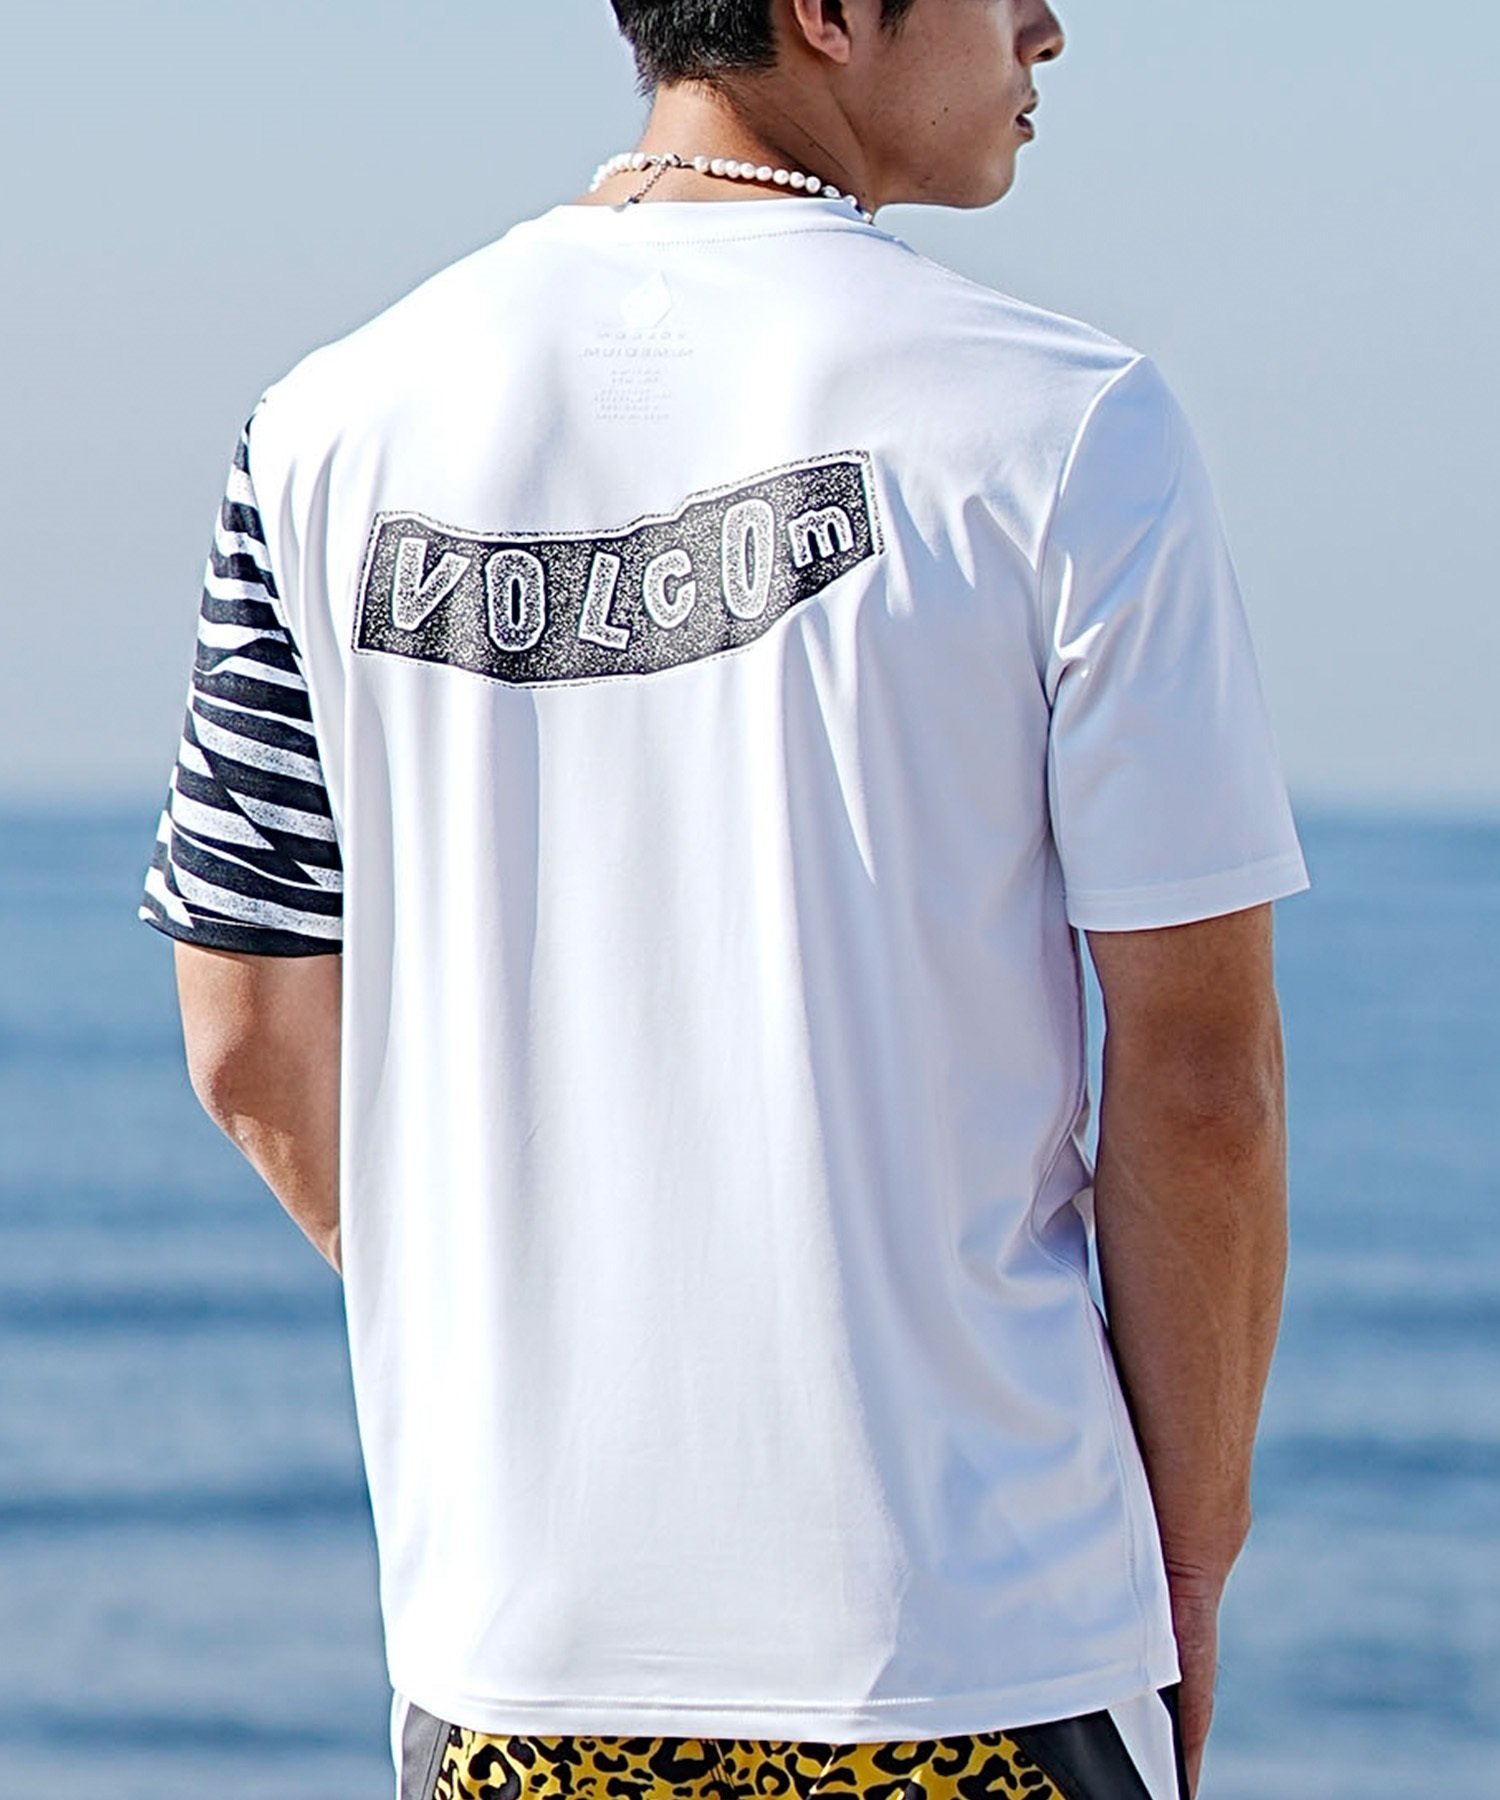 【マトメガイ対象】VOLCOM ボルコム メンズ ラッシュガード Tシャツ 半袖 水着 UVカット バックプリント A9112404(WHT-S)